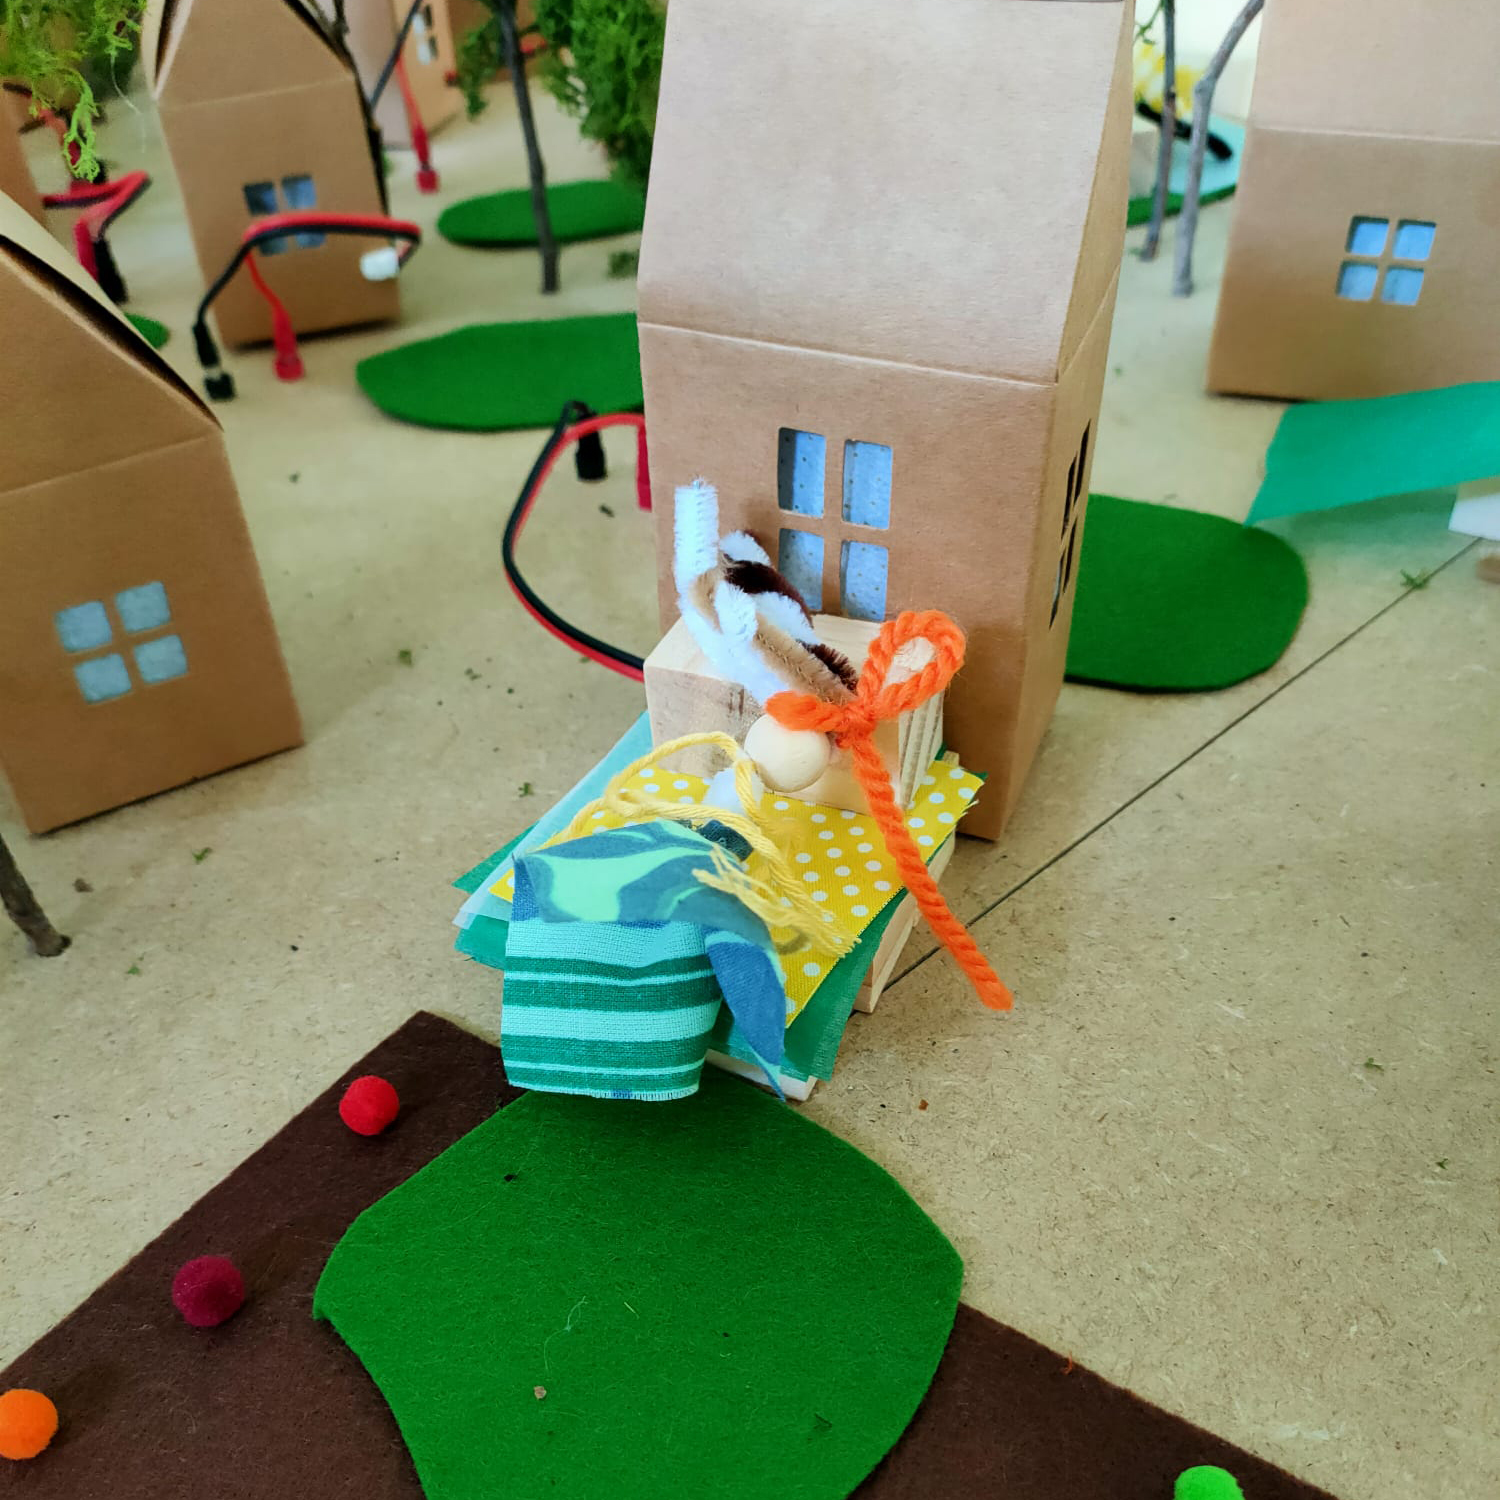 Vista detalle. En el centro, un muñeco de trapo con figura humana frente a una casa de cartón, que es parte de una comunidad de casas de cartón, zonas verdes, árboles y cables eléctricos.